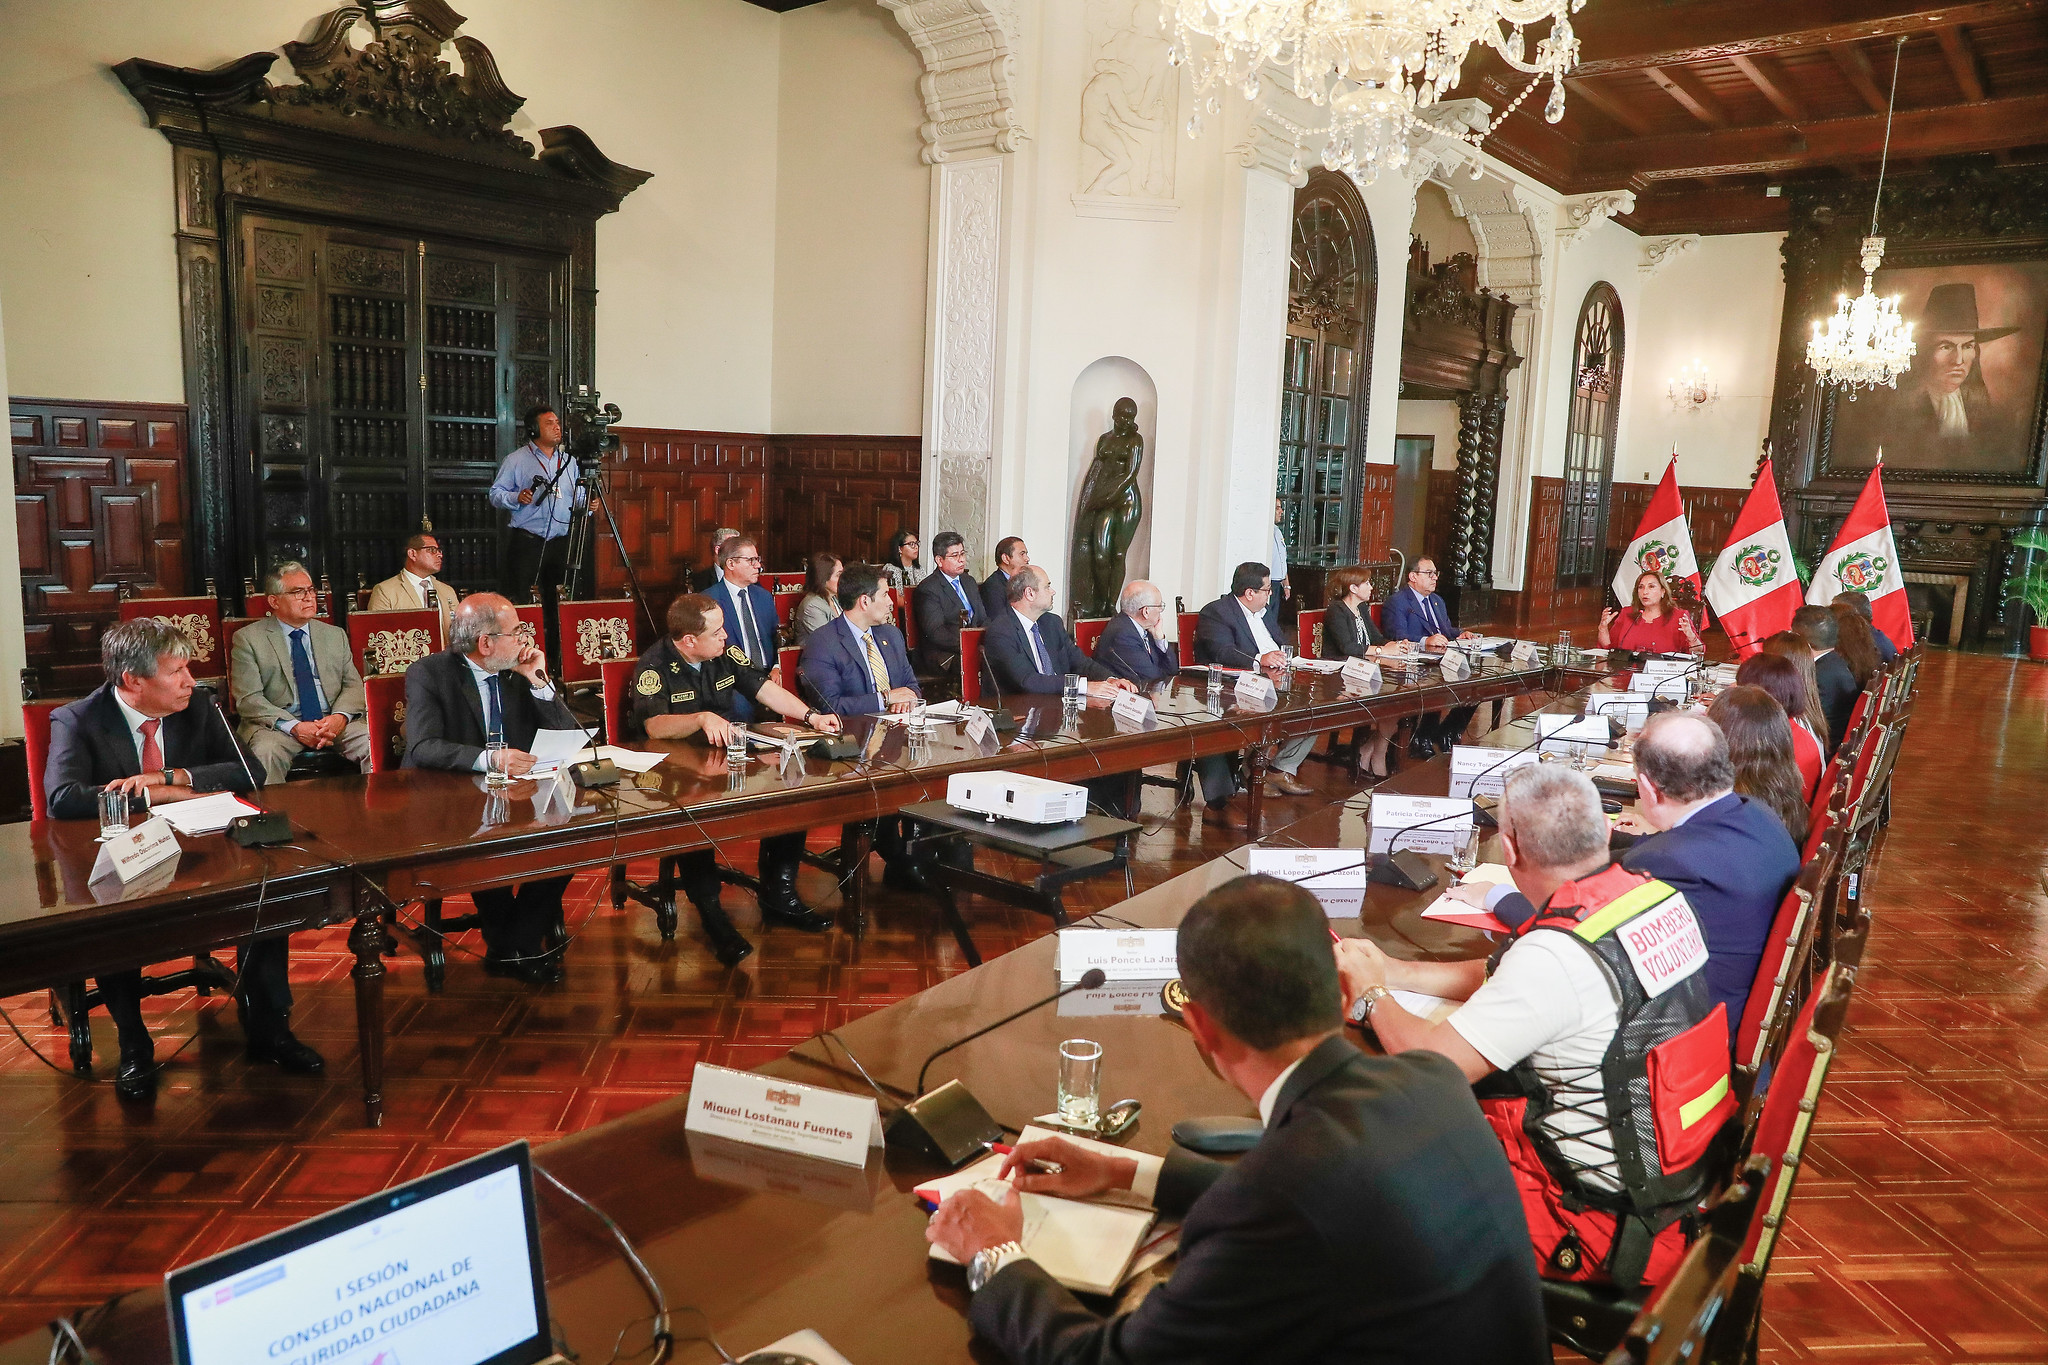 PERÚ: Presidenta Boluarte lideró reunión del Conasec para fortalecer lucha contra la delincuencia y crimen organizado